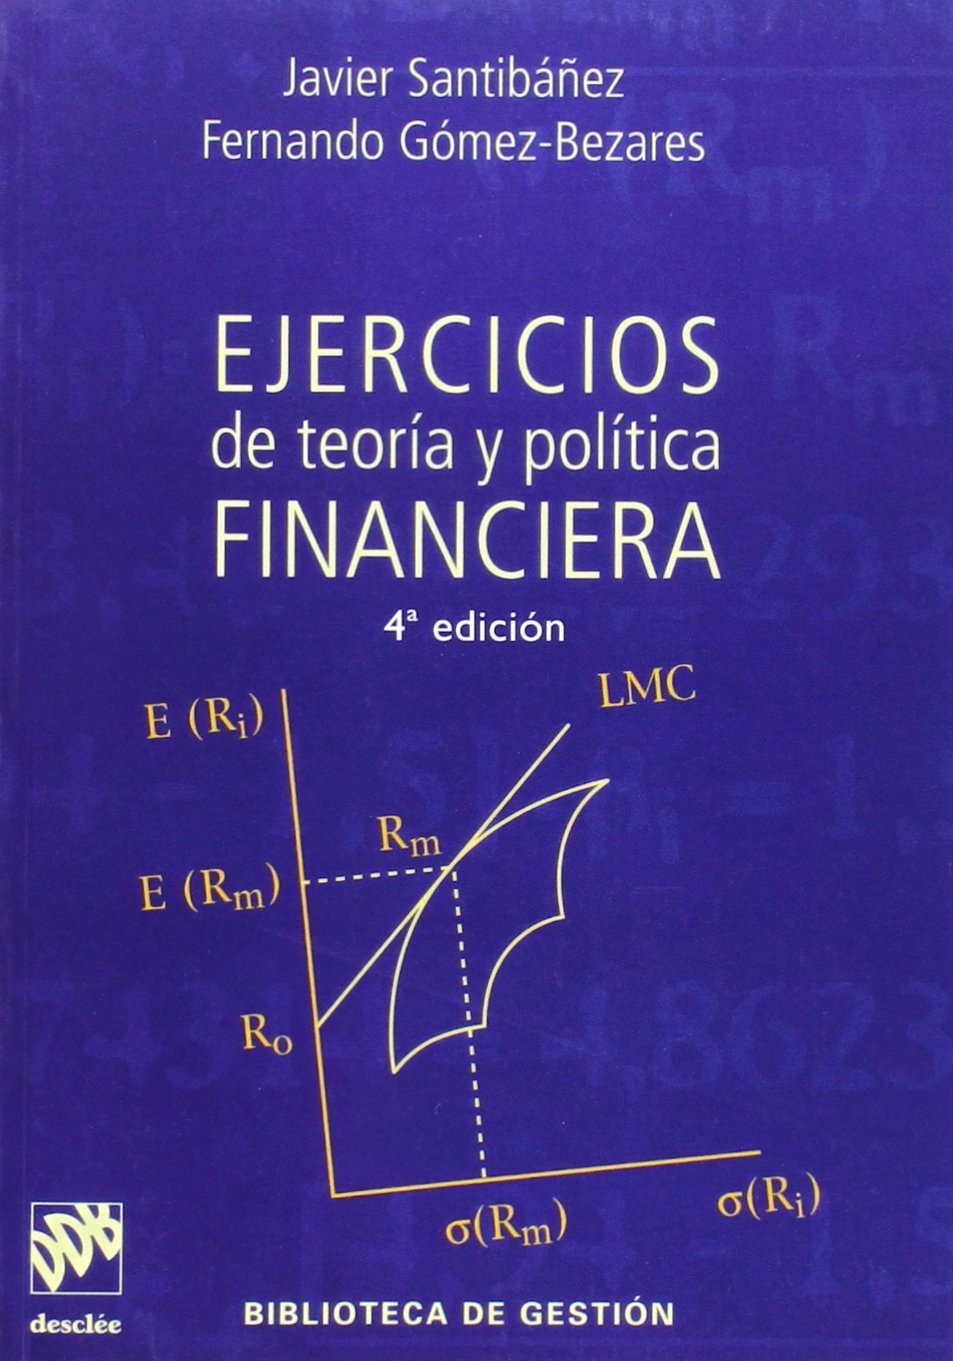 Imagen de portada del libro Ejercicios de teoría y política financiera